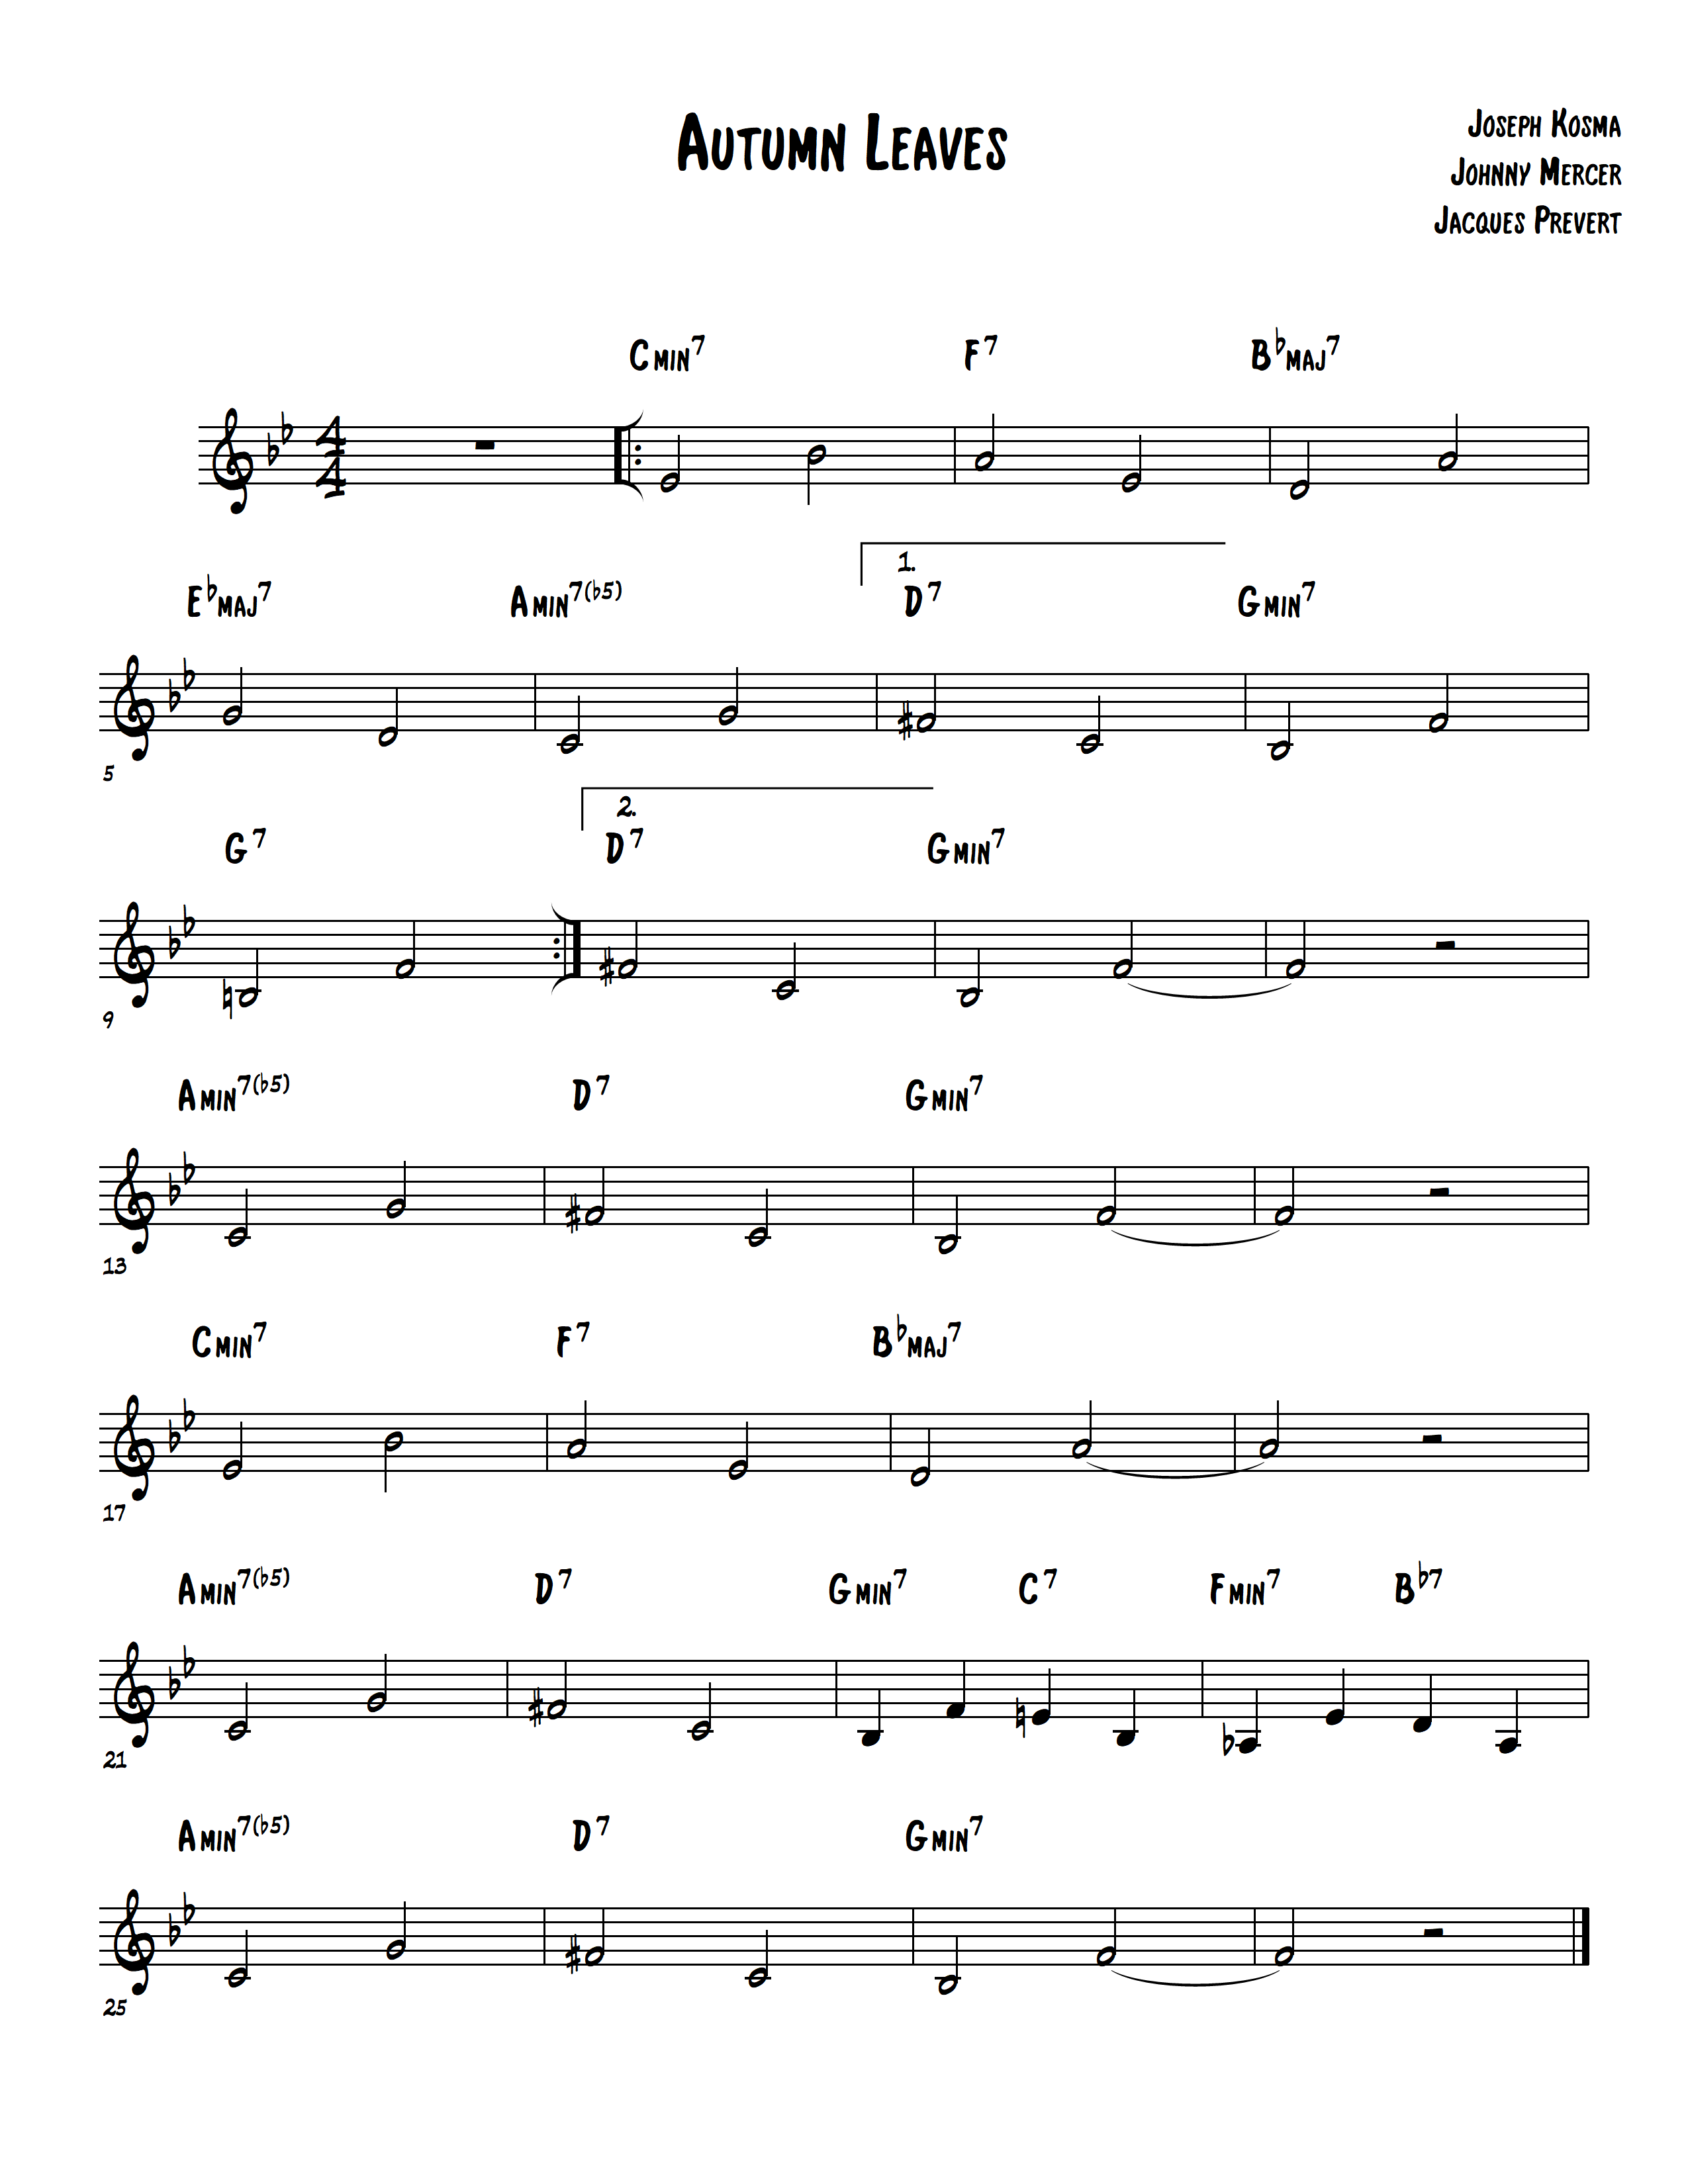 jazz standard lead sheets